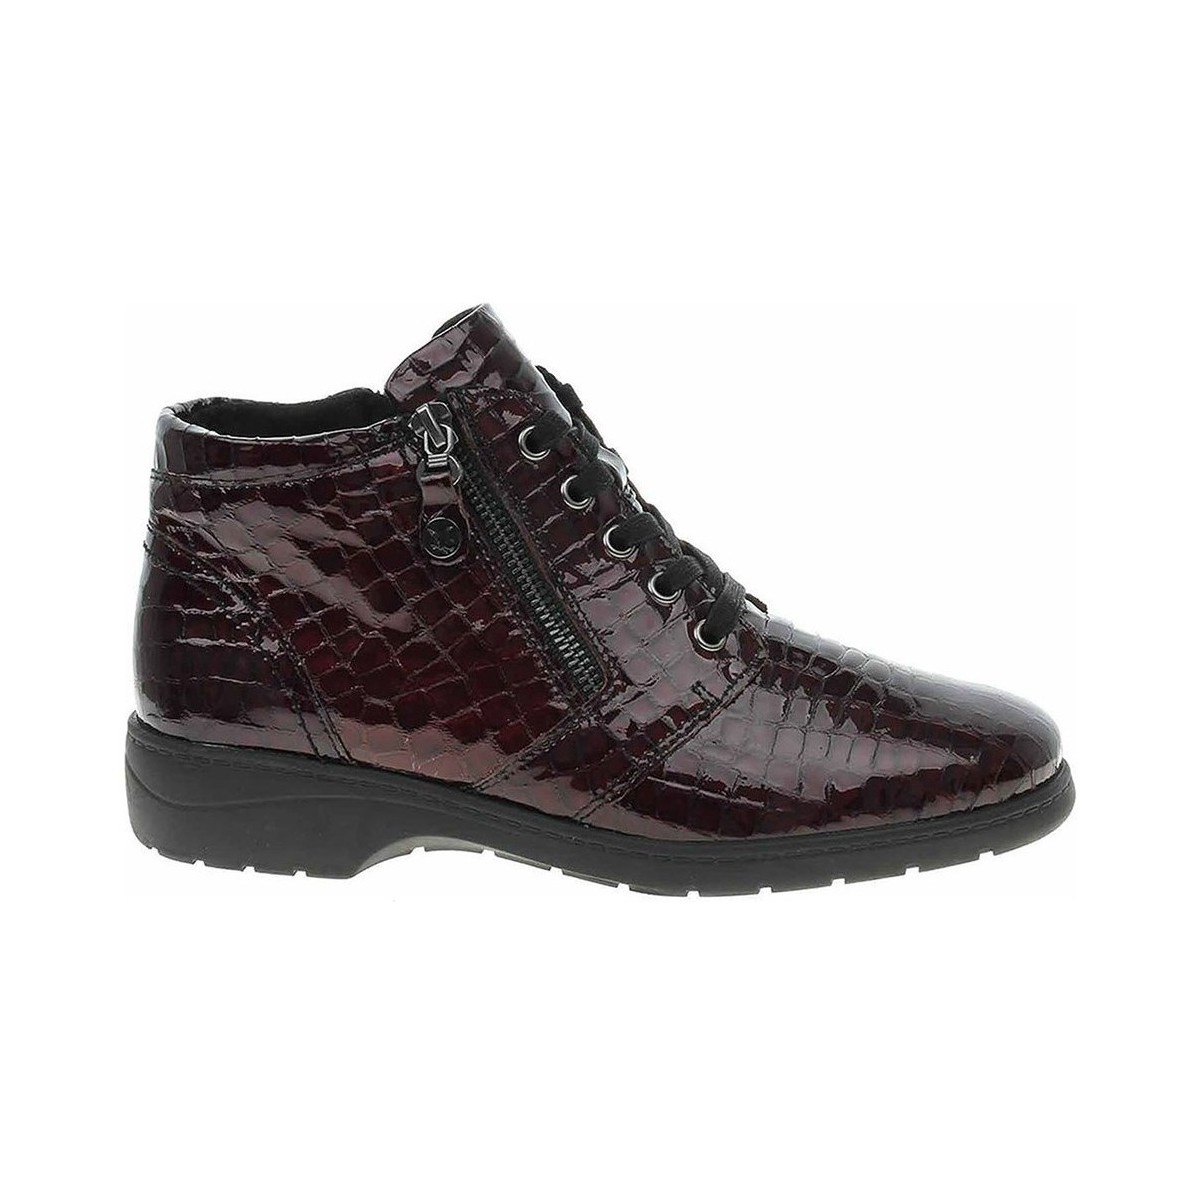 Chaussures Femme Boots Caprice 992515229536 Bordeaux